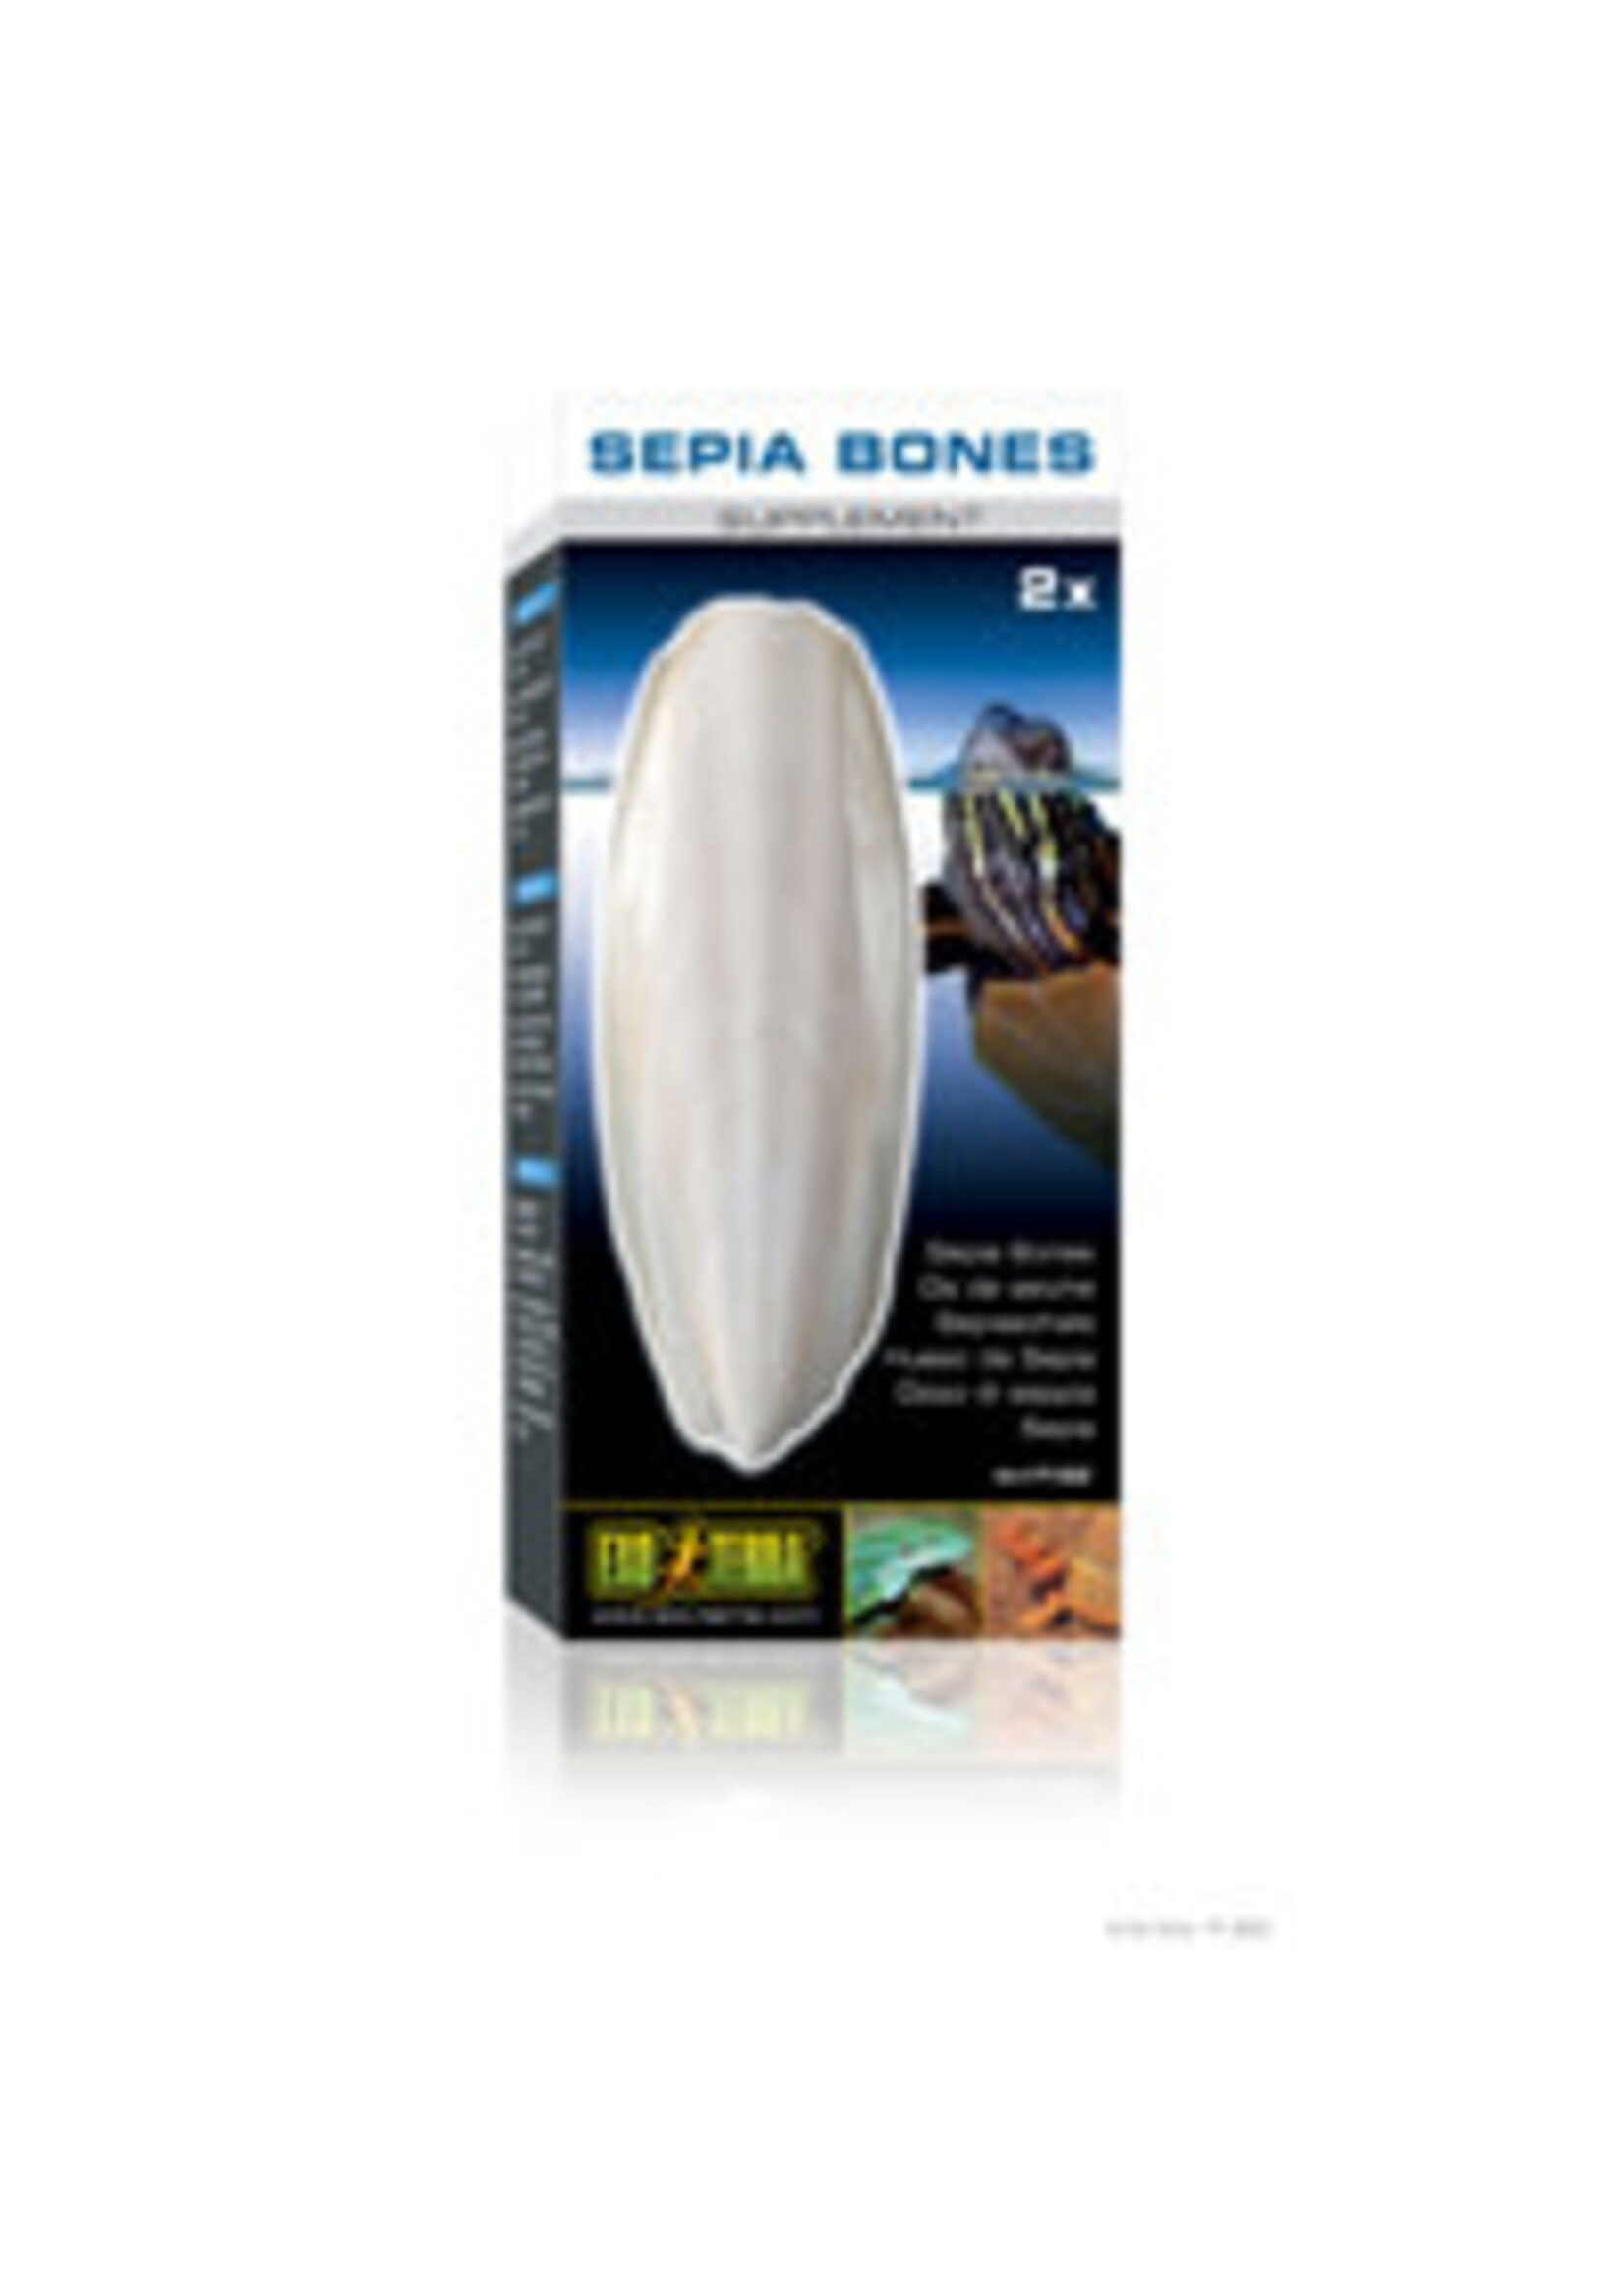 Exo Terra Exo Terra - Sepia Bones Supplement - 2 pieces